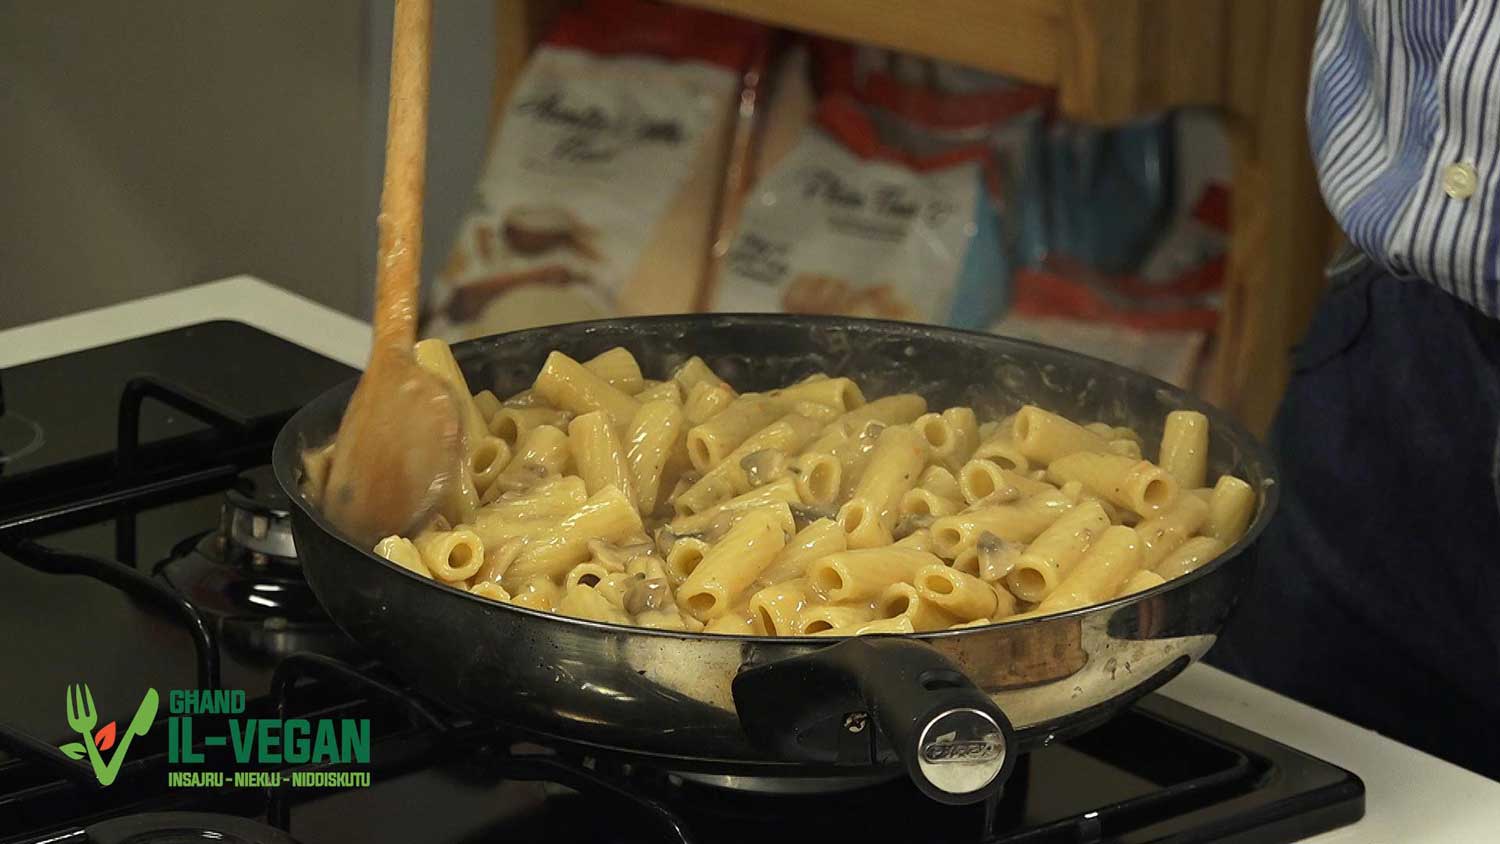 Vegan-creamy-pasta-with-mushrooms-recipe